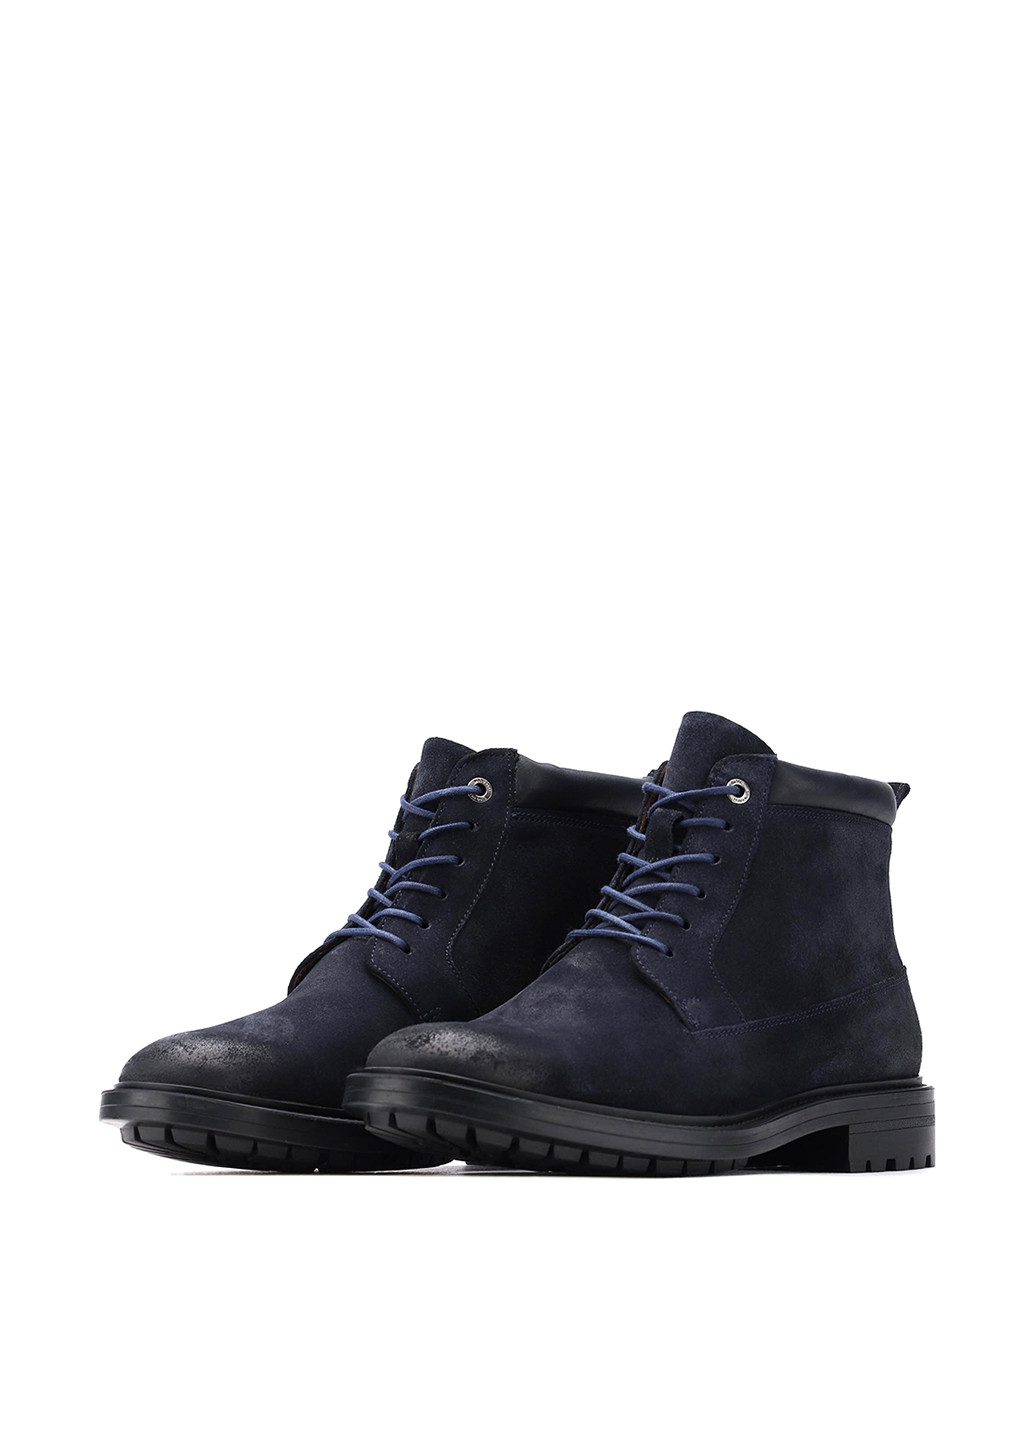 Темно-синие зимние черевики gino rossi mi08-c797-799-01 Gino Rossi